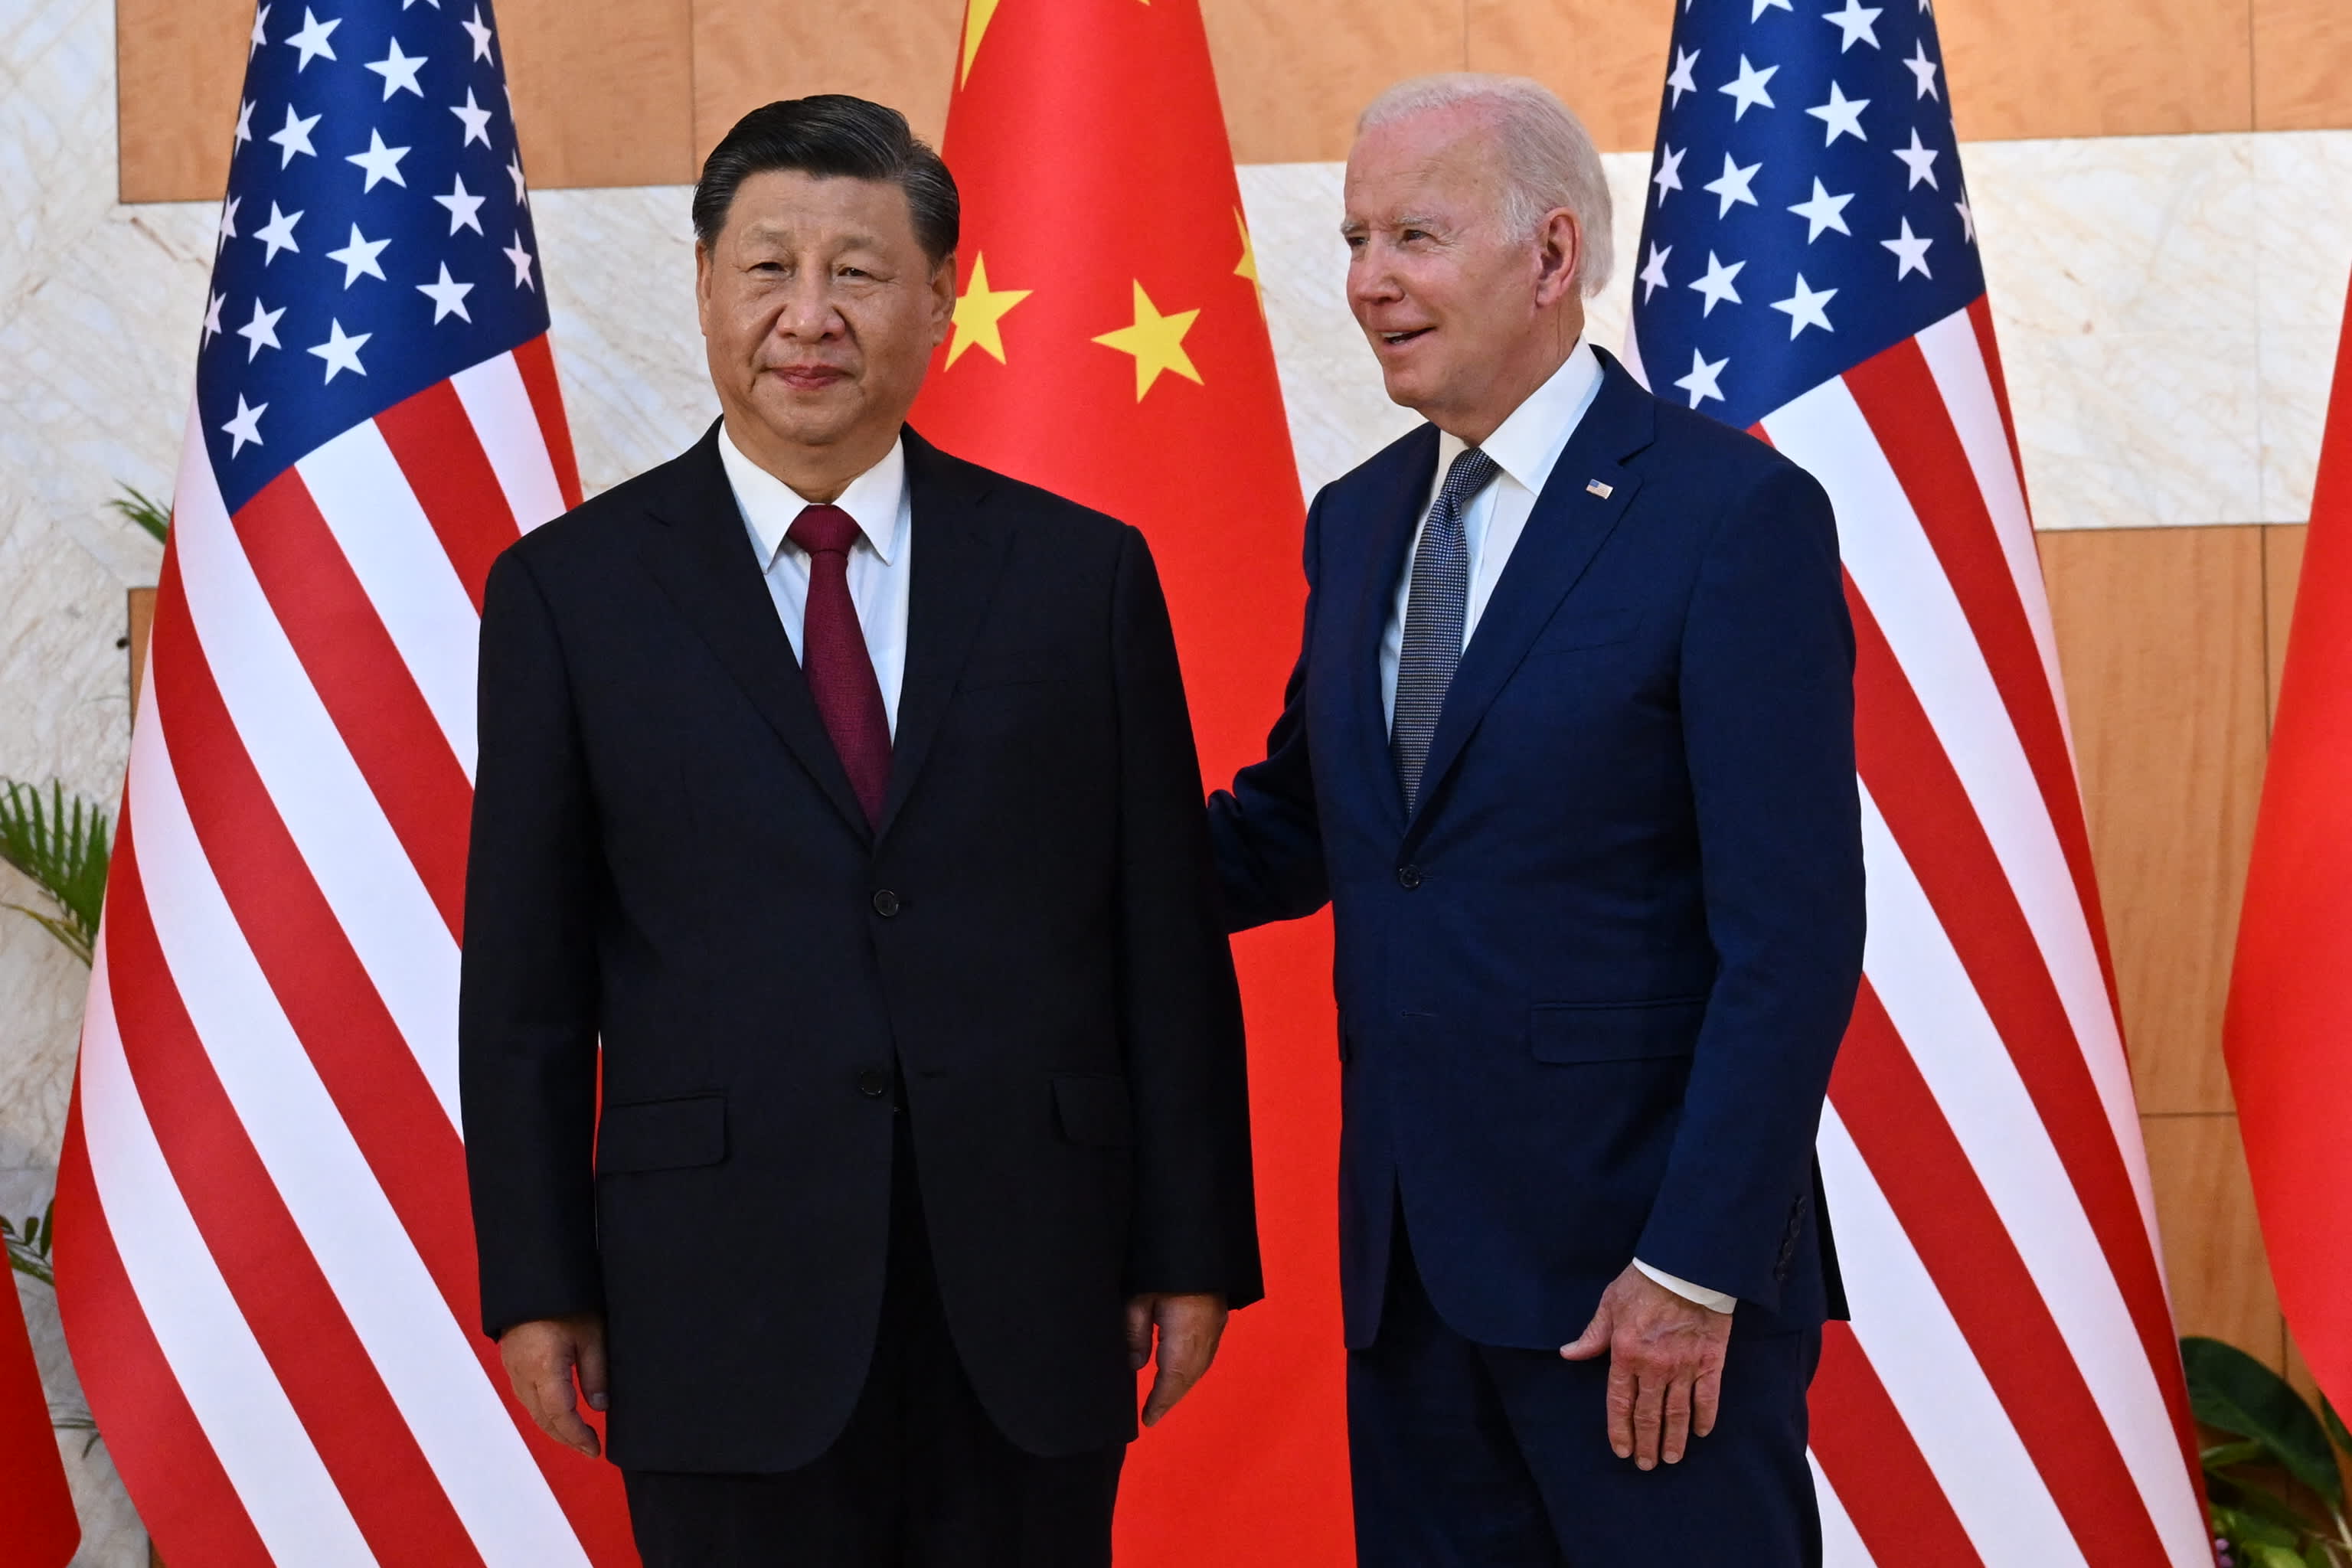 Biały Dom twierdzi, że Biden spotka się w przyszłym miesiącu z prezydentem Chin Xi Jinpingiem